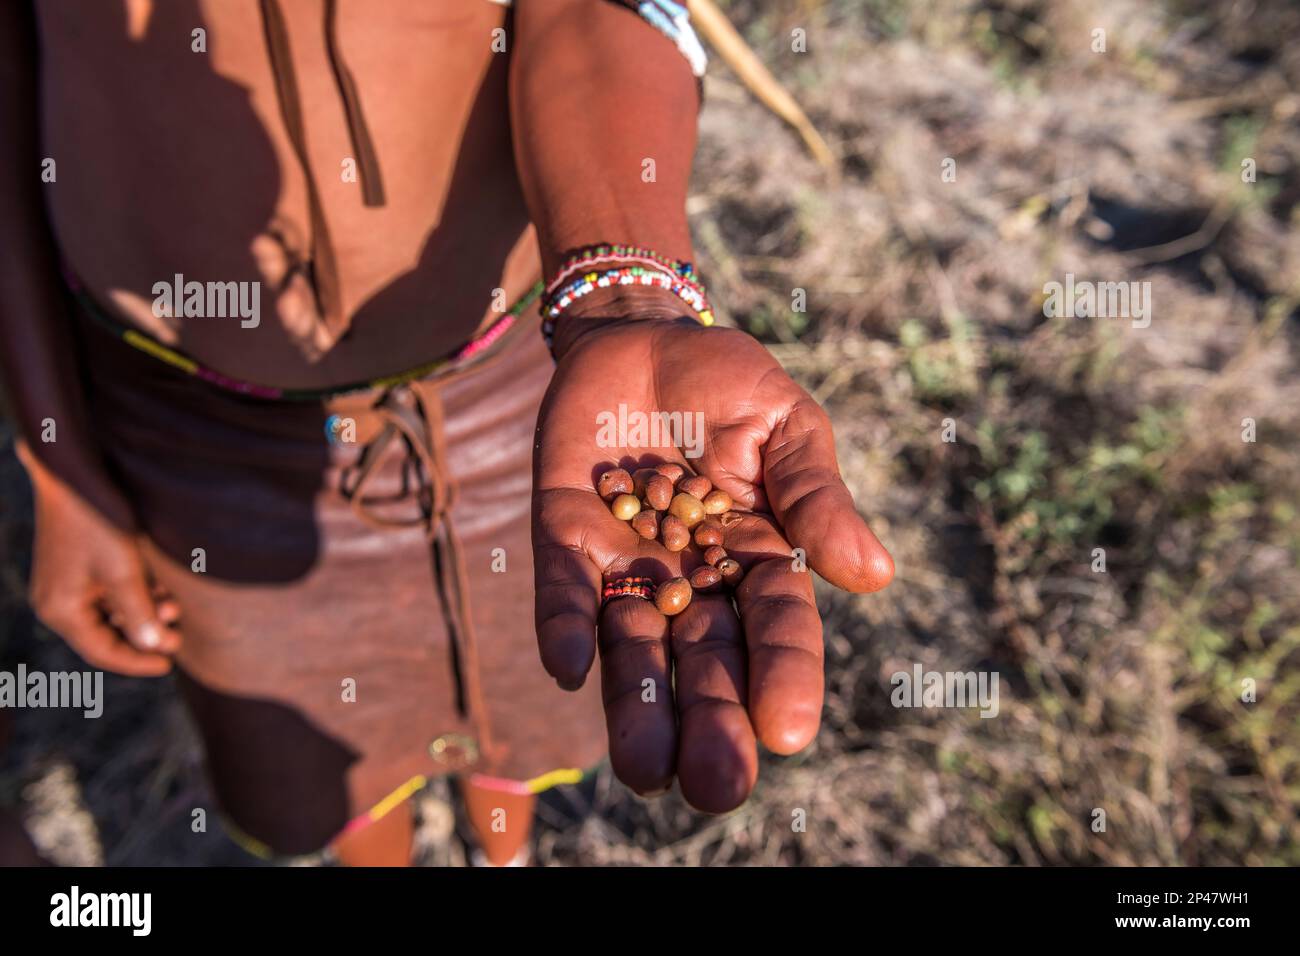 Afrika, Botswana, Kalahari Wüste. Beeren werden in den Händen eines älteren Stammesangehörigen des Jäger-Sammler !Kung Volkes gezeigt, Teil des San Stamms. Stockfoto